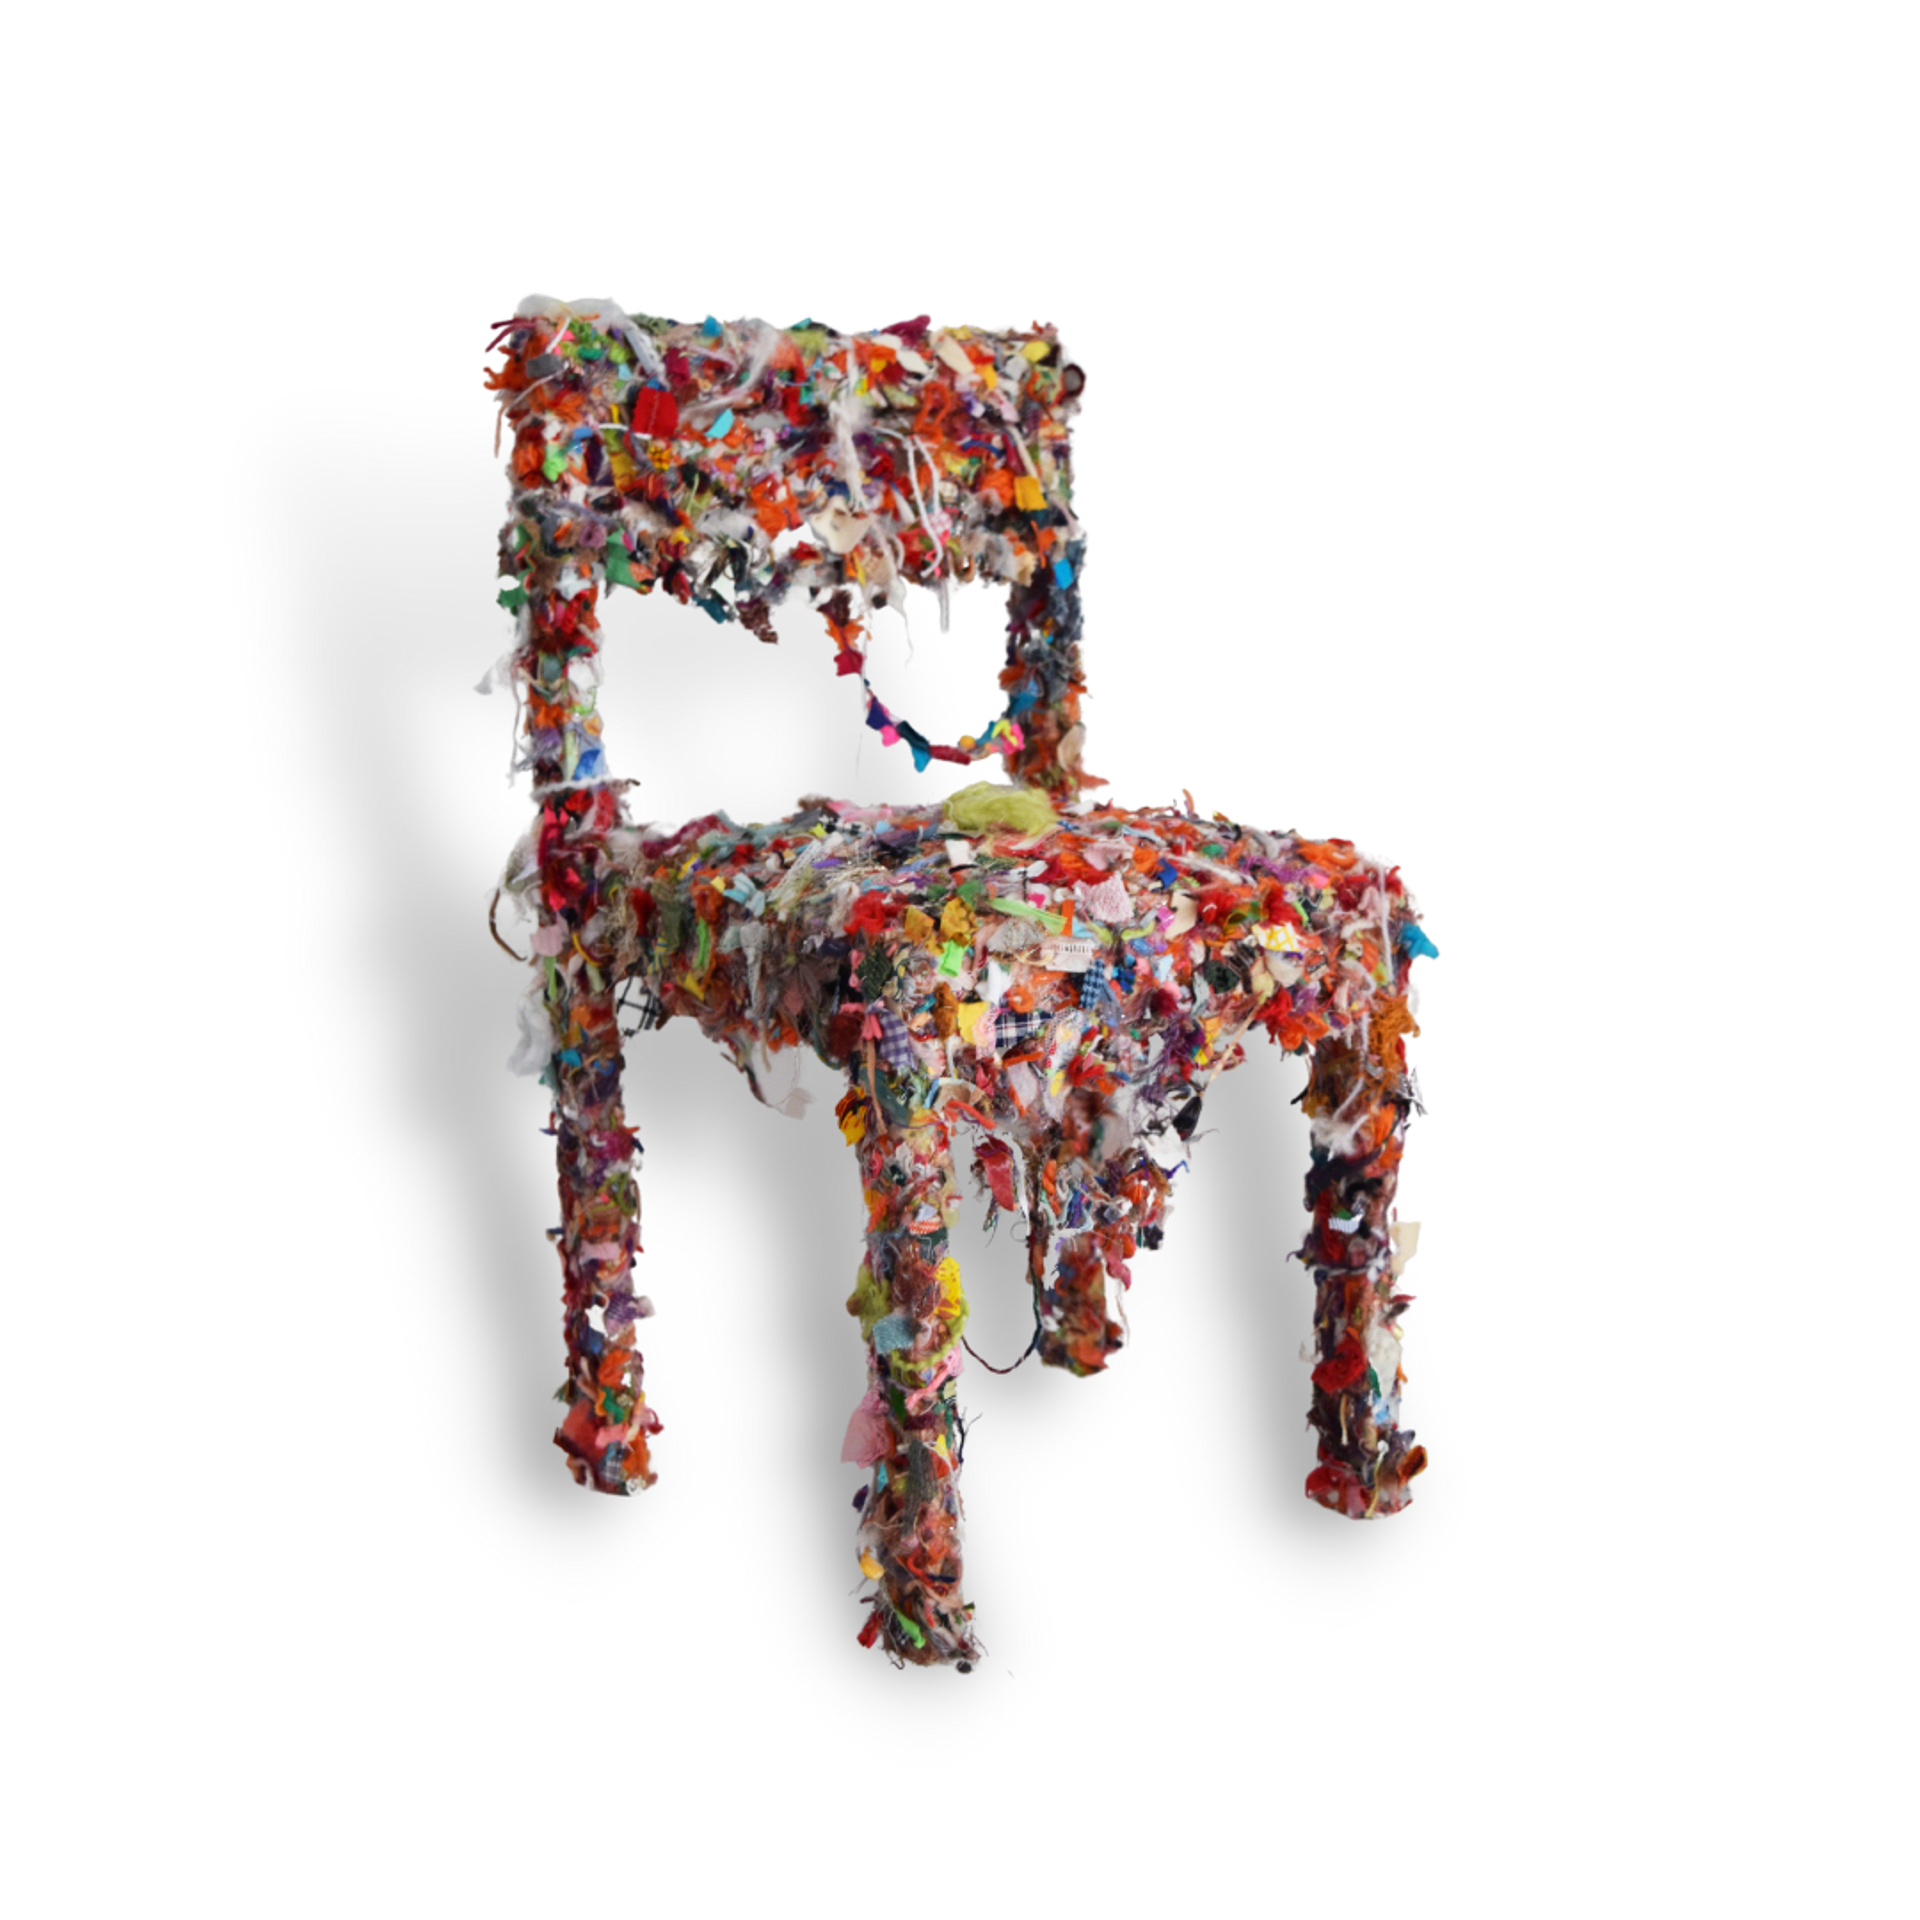 Shredded Fabric Chair by Alyson Vega